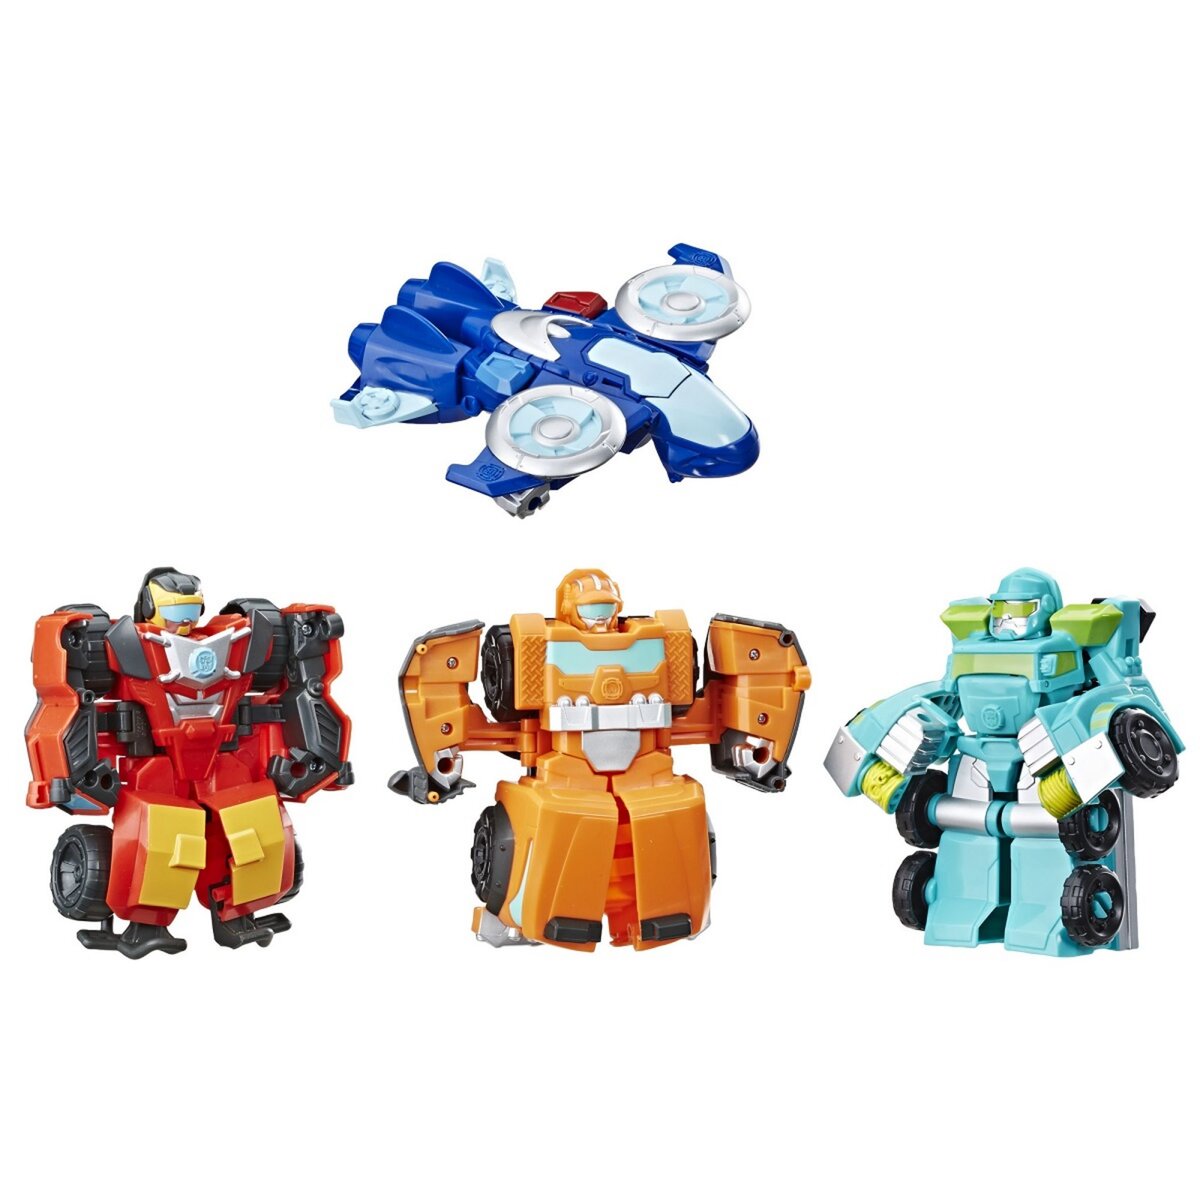 HASBRO Coffret de 4 robots secouristes transformables 12 cm - Hot Shot, Hoist, Wedge et Whirl - Transformers Rescue Bots Academy